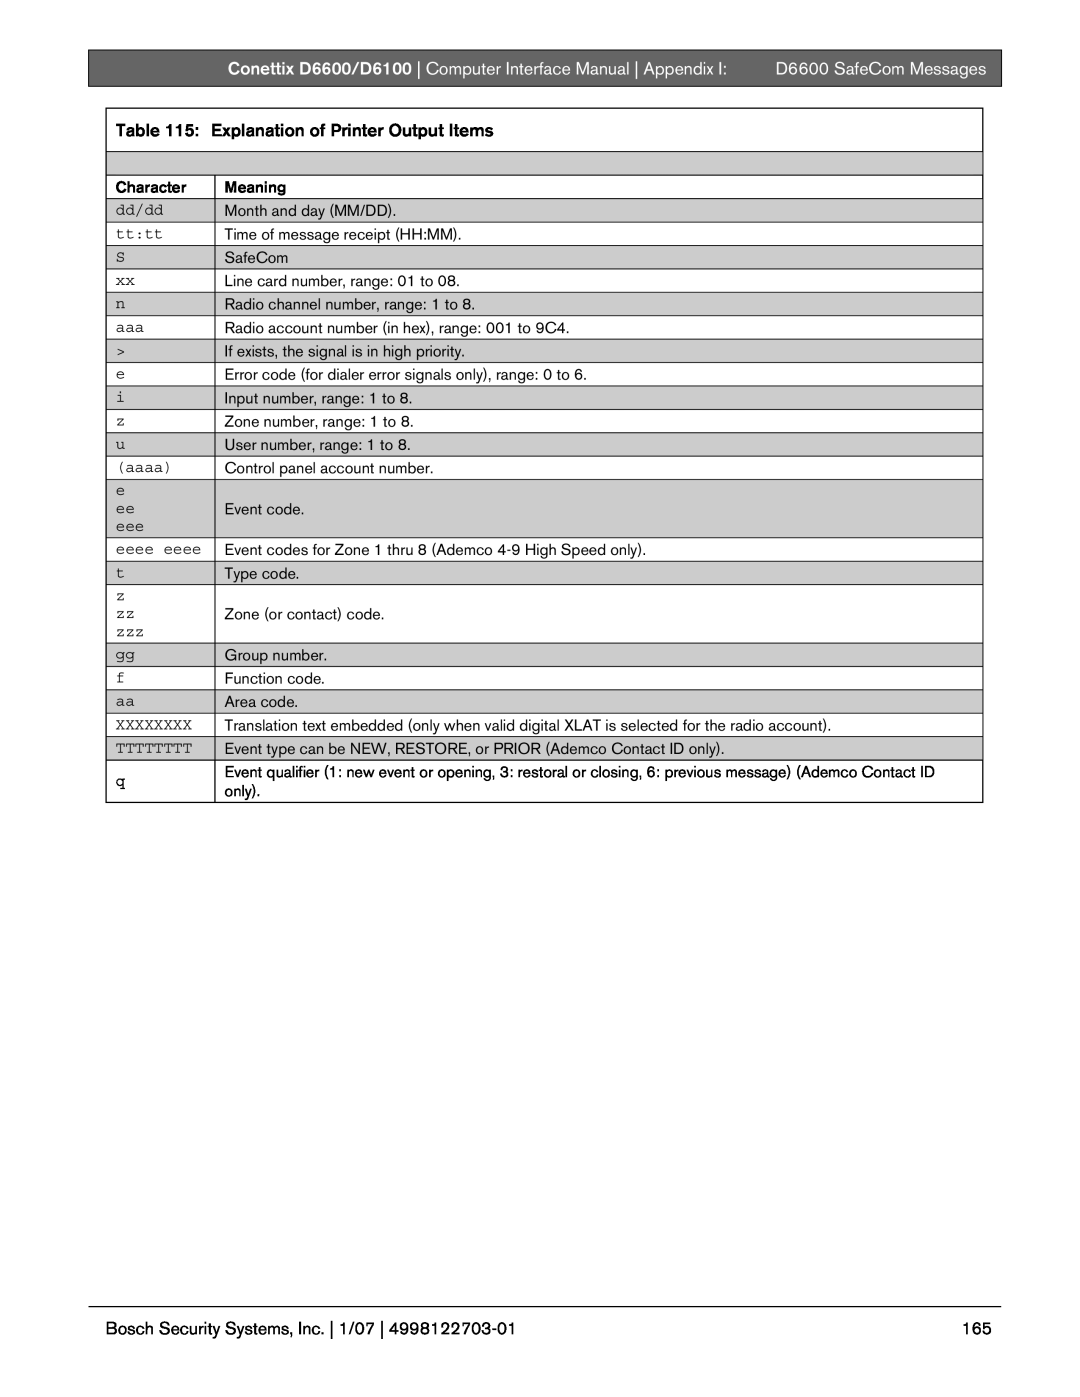 Bosch Appliances D6100 manual Explanation of Printer Output Items, Appendix, D6600 SafeCom Messages 